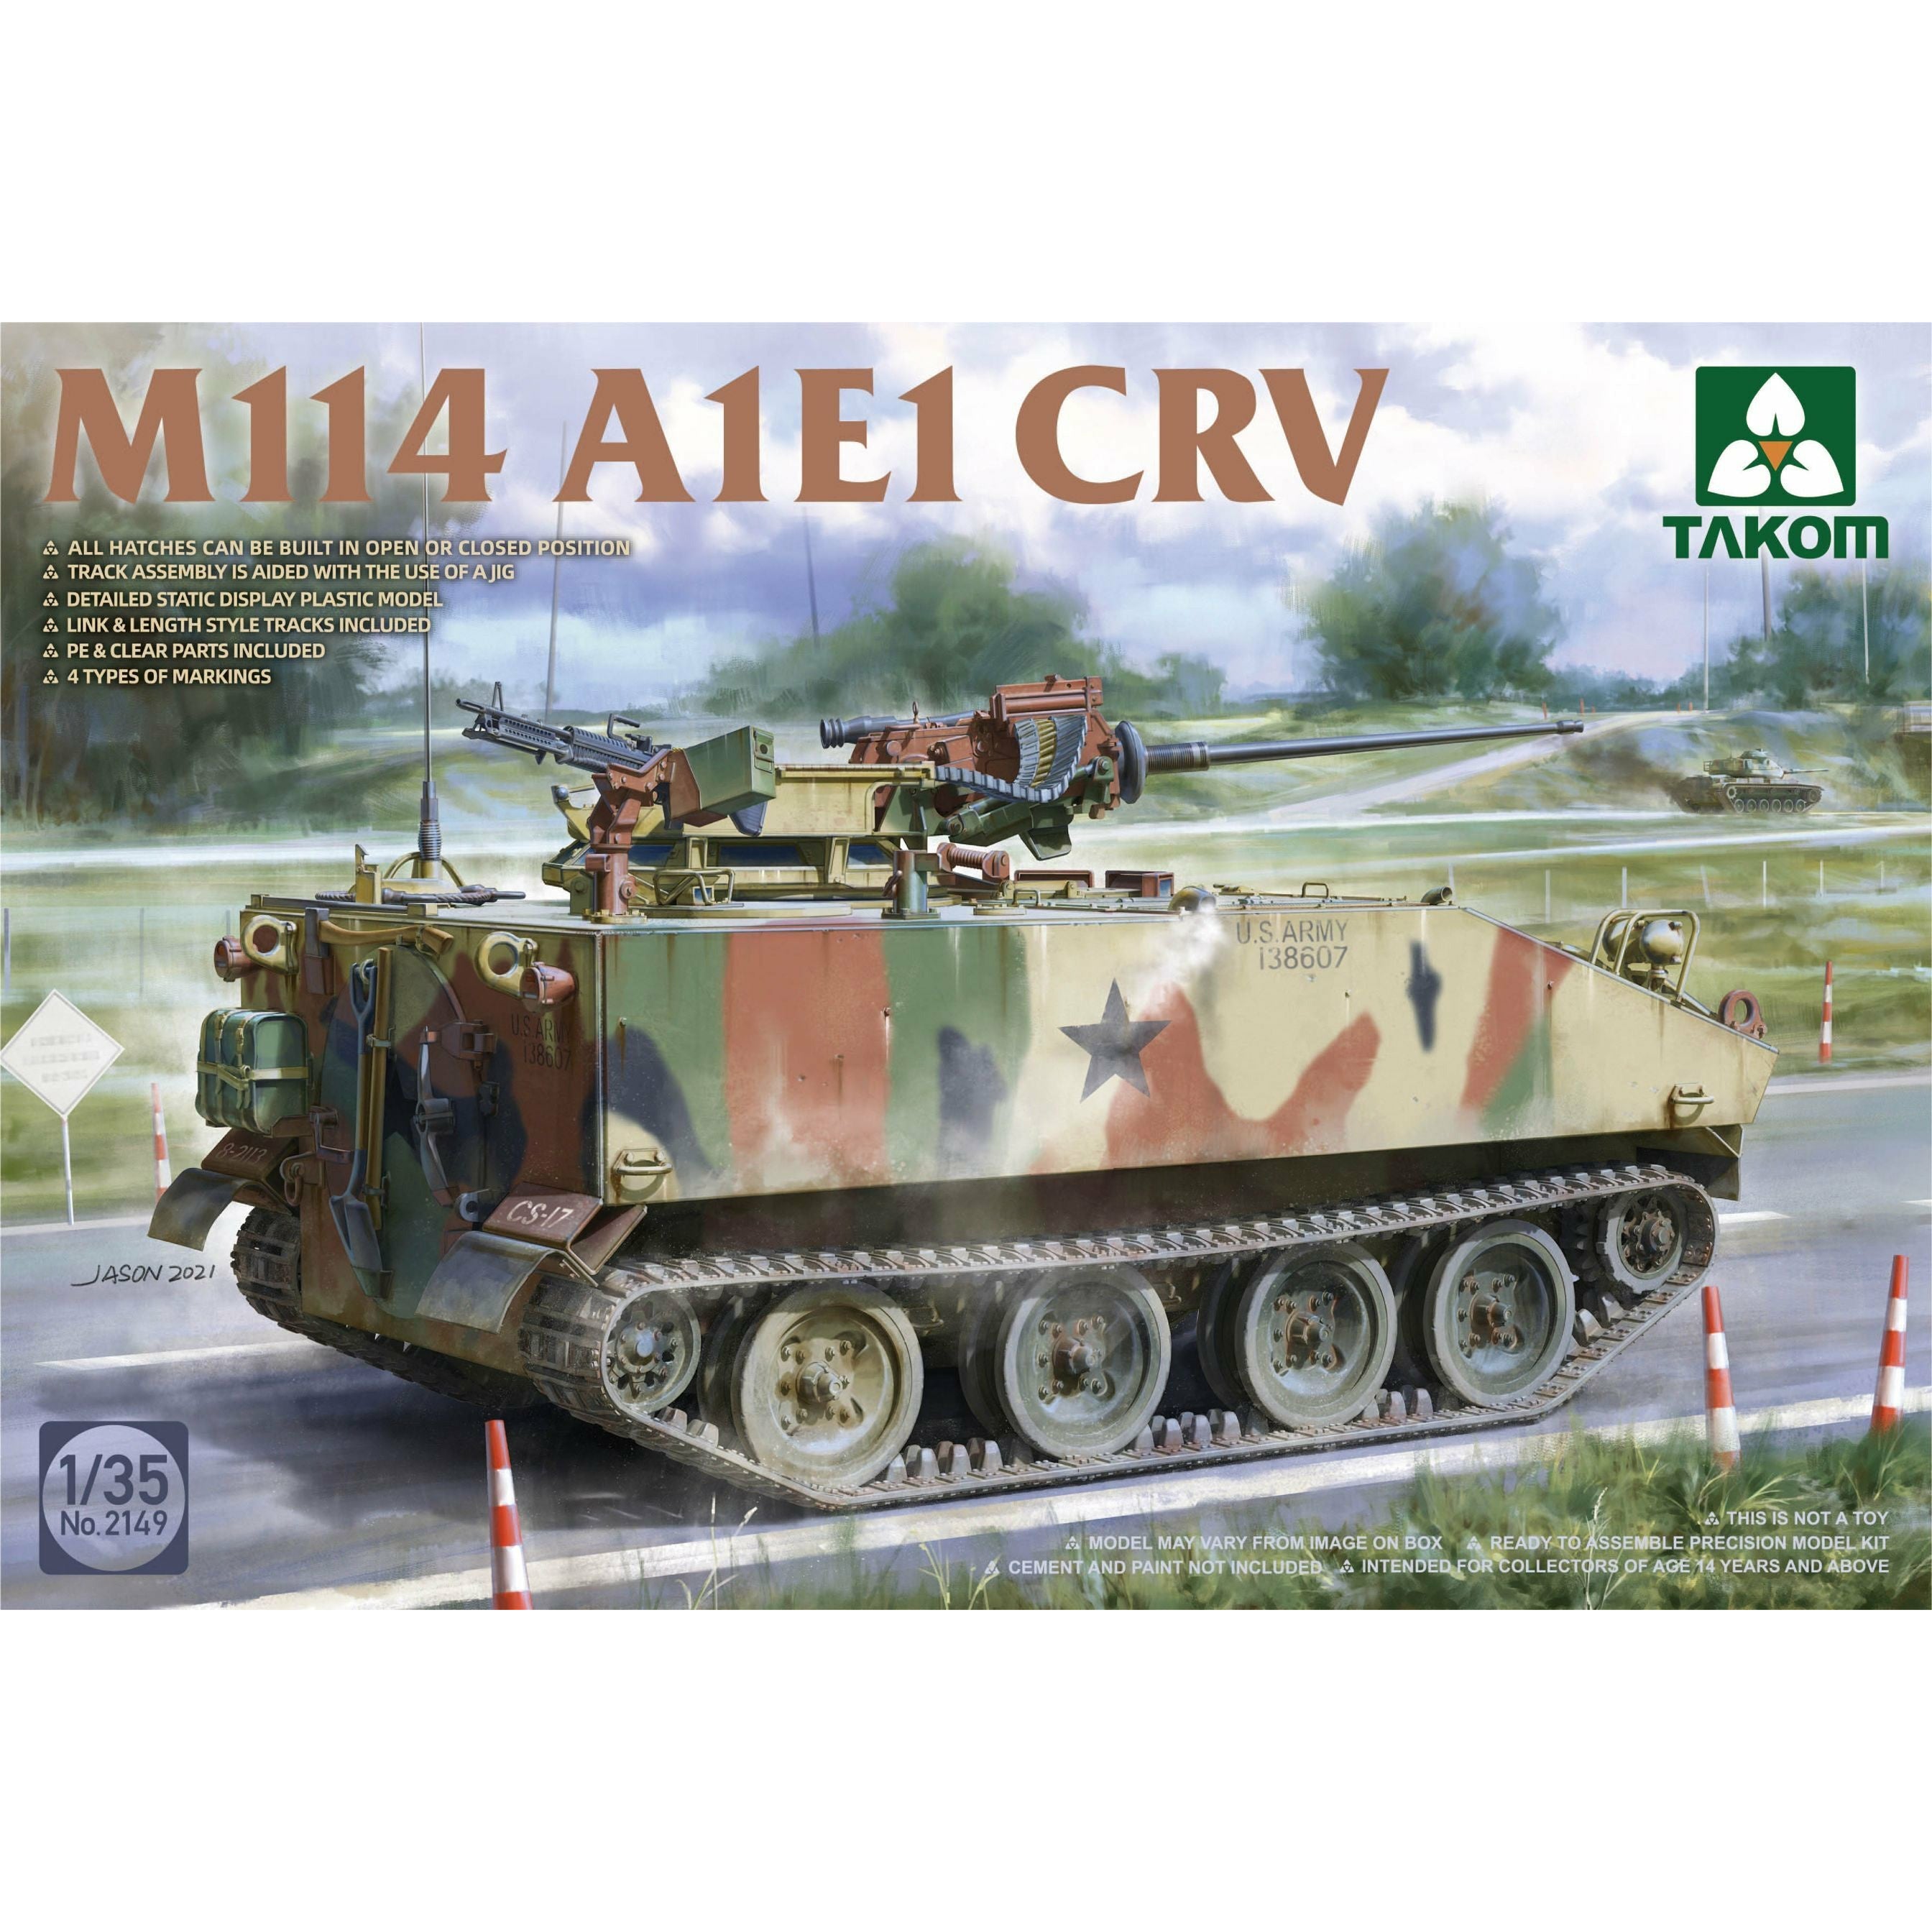 M114 A1E1 CRV 1/35 #2149 by Takom